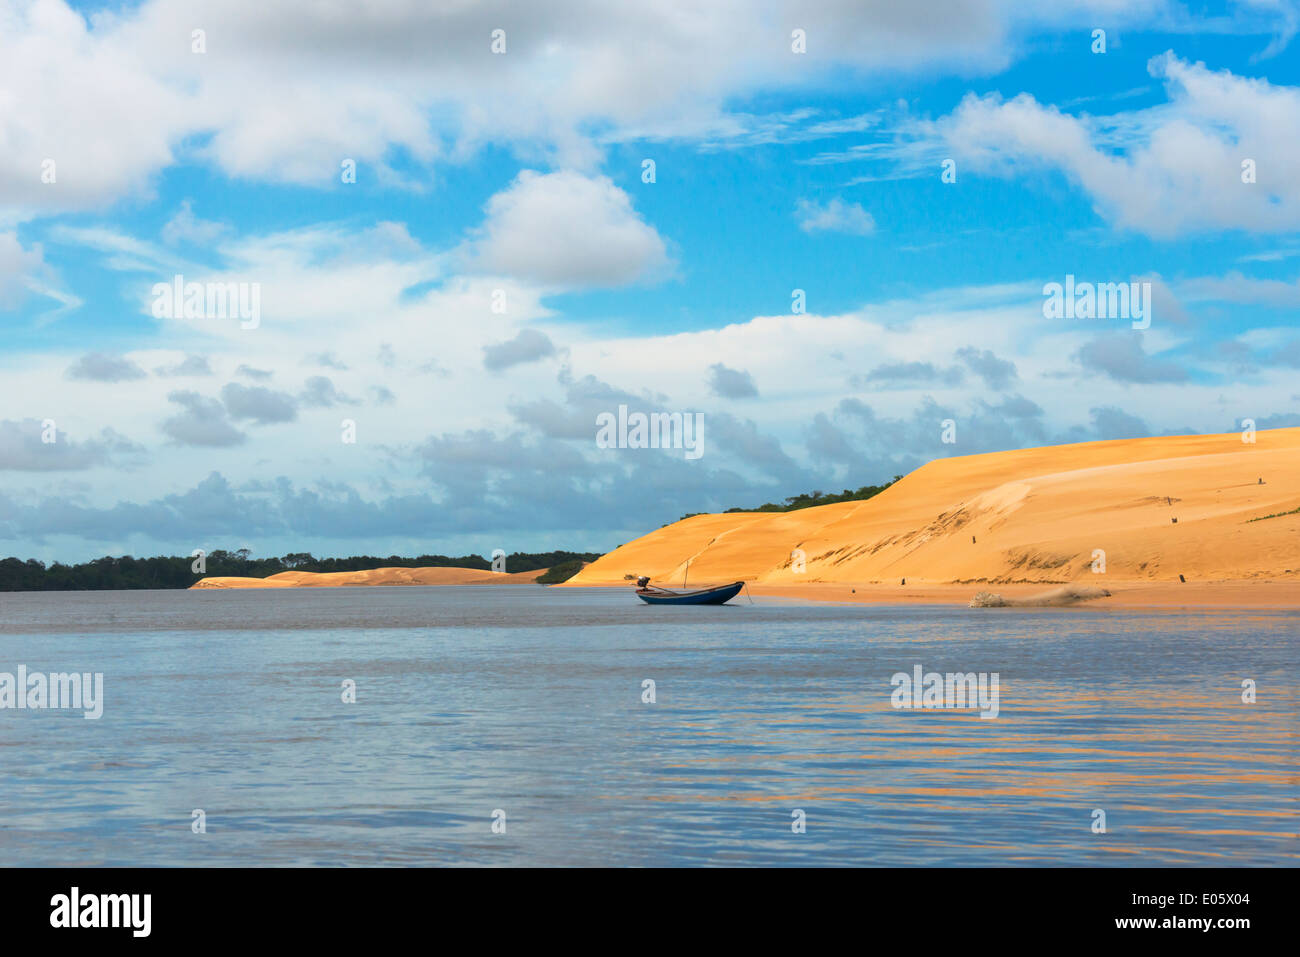 Sand dune in Lencois Maranheinses National Park, Maranhao State, Brazil Stock Photo